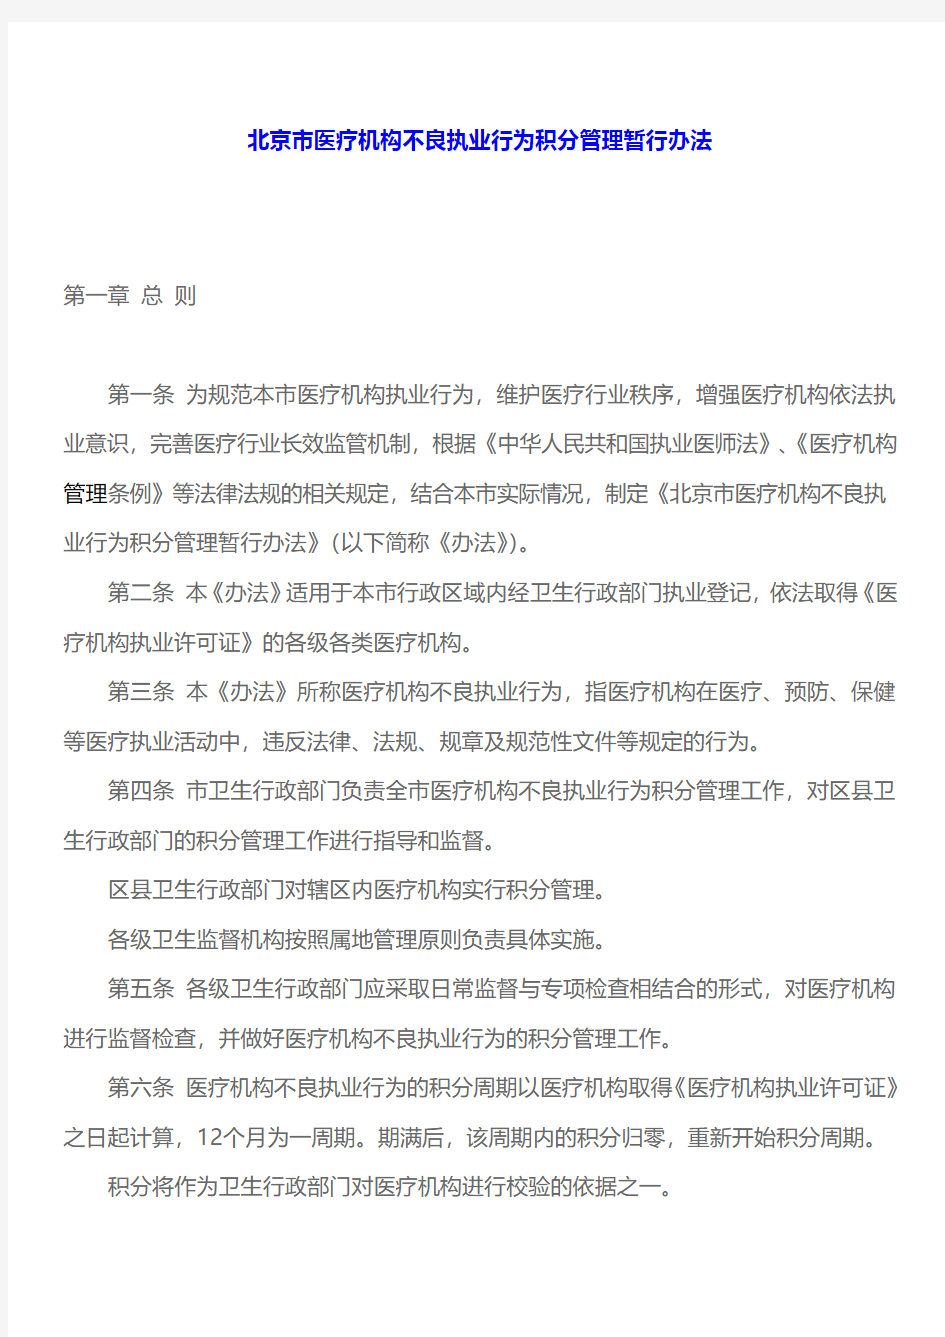 北京市医疗机构不良执业行为积分管理暂行办法